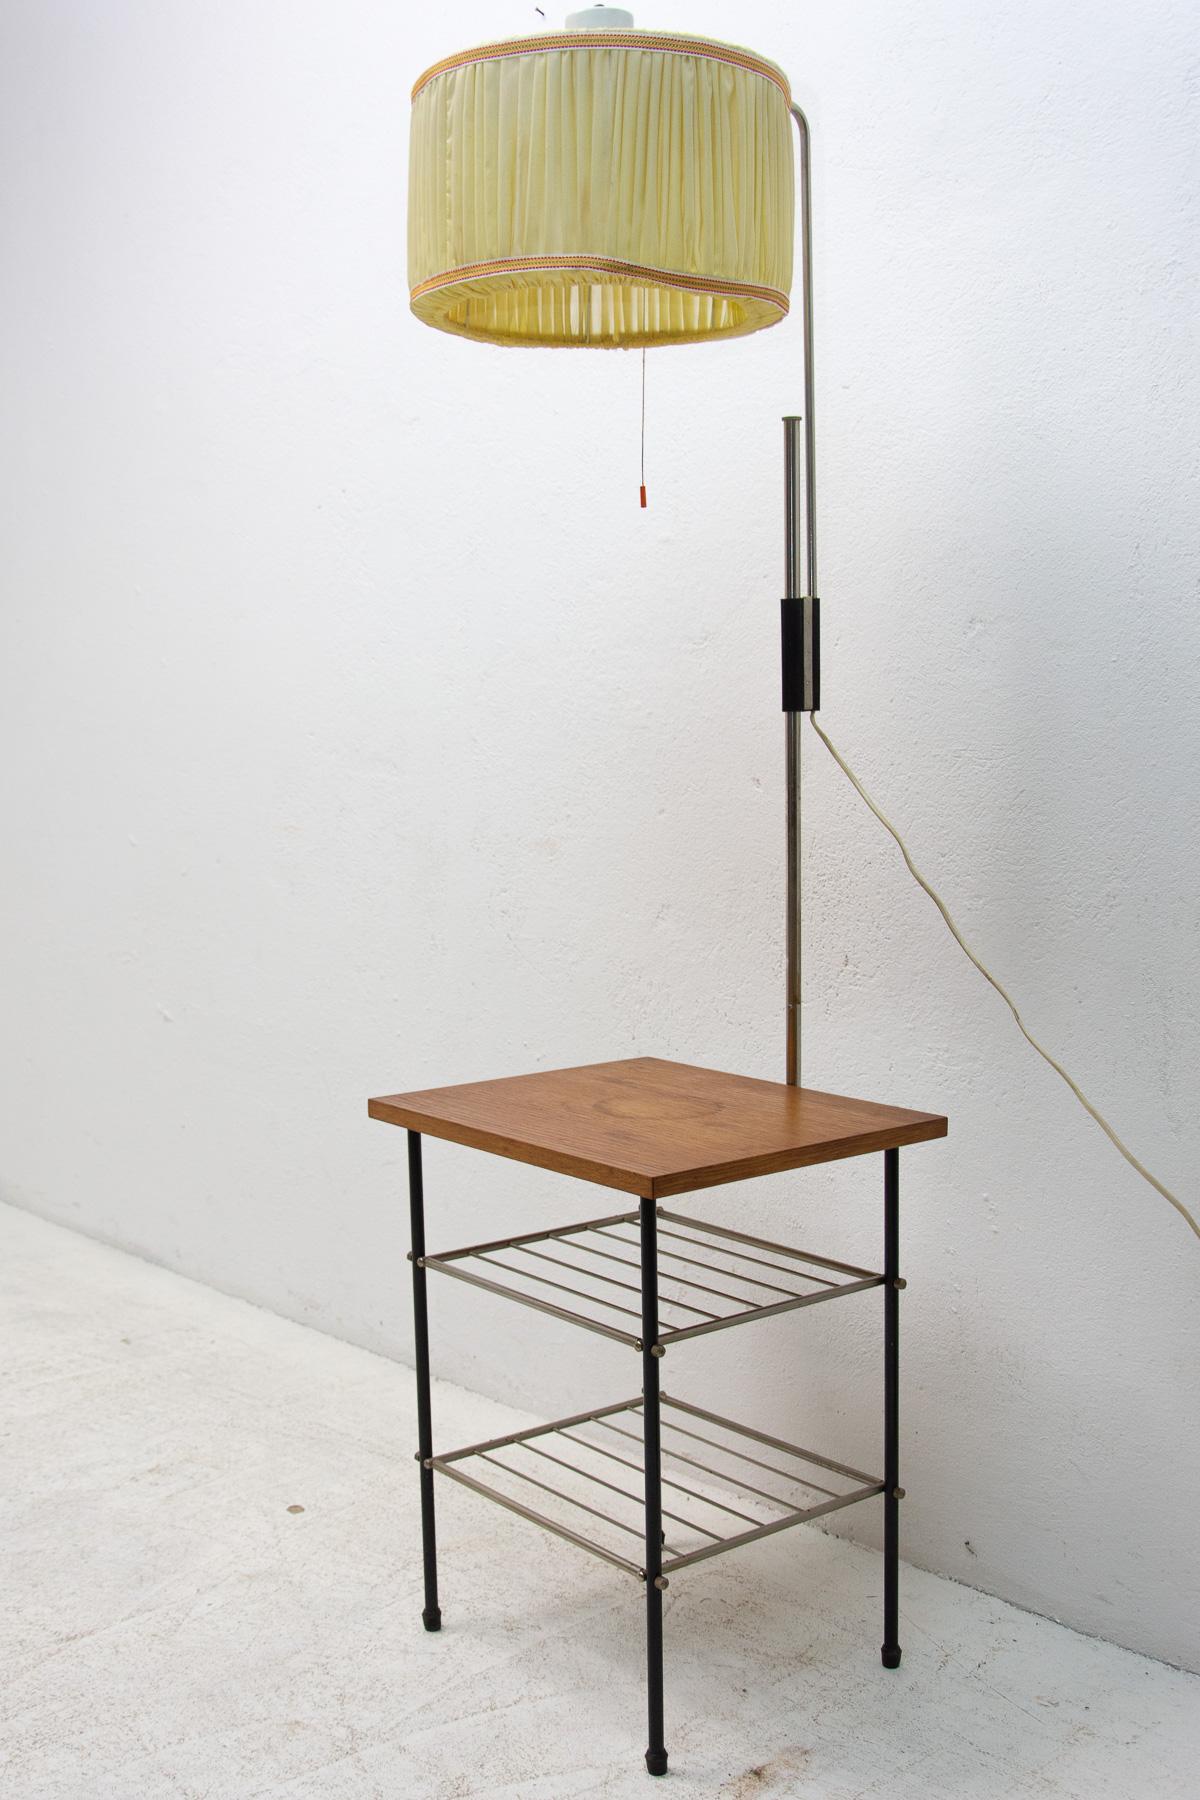 Diese Lampe wurde in den 70er Jahren in der Tschechoslowakei hergestellt. Er ist aus Buchenholz, Metall und Stoff gefertigt.
Insgesamt ist es in gutem Zustand, gut funktionsfähig. Nur das obere Holzbrett trägt Alters- und Gebrauchsspuren und hat